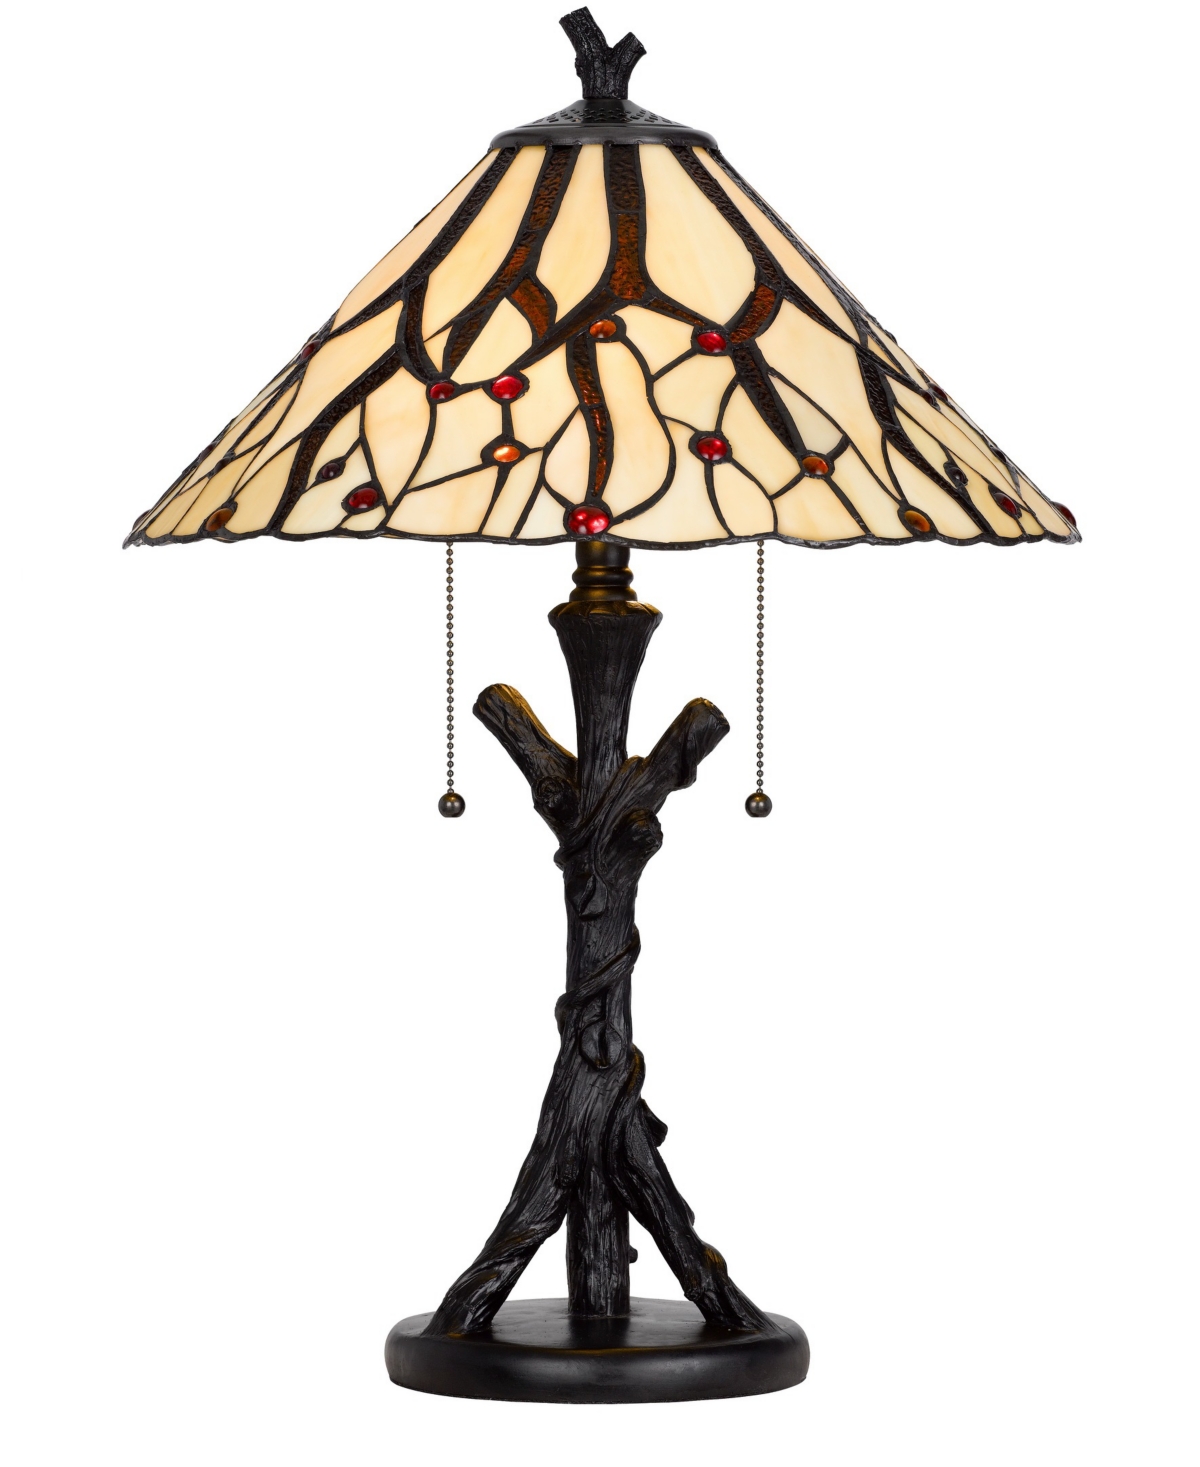 Cal Lighting 24" Height Metal And Resin Table Lamp In Dark Bronze